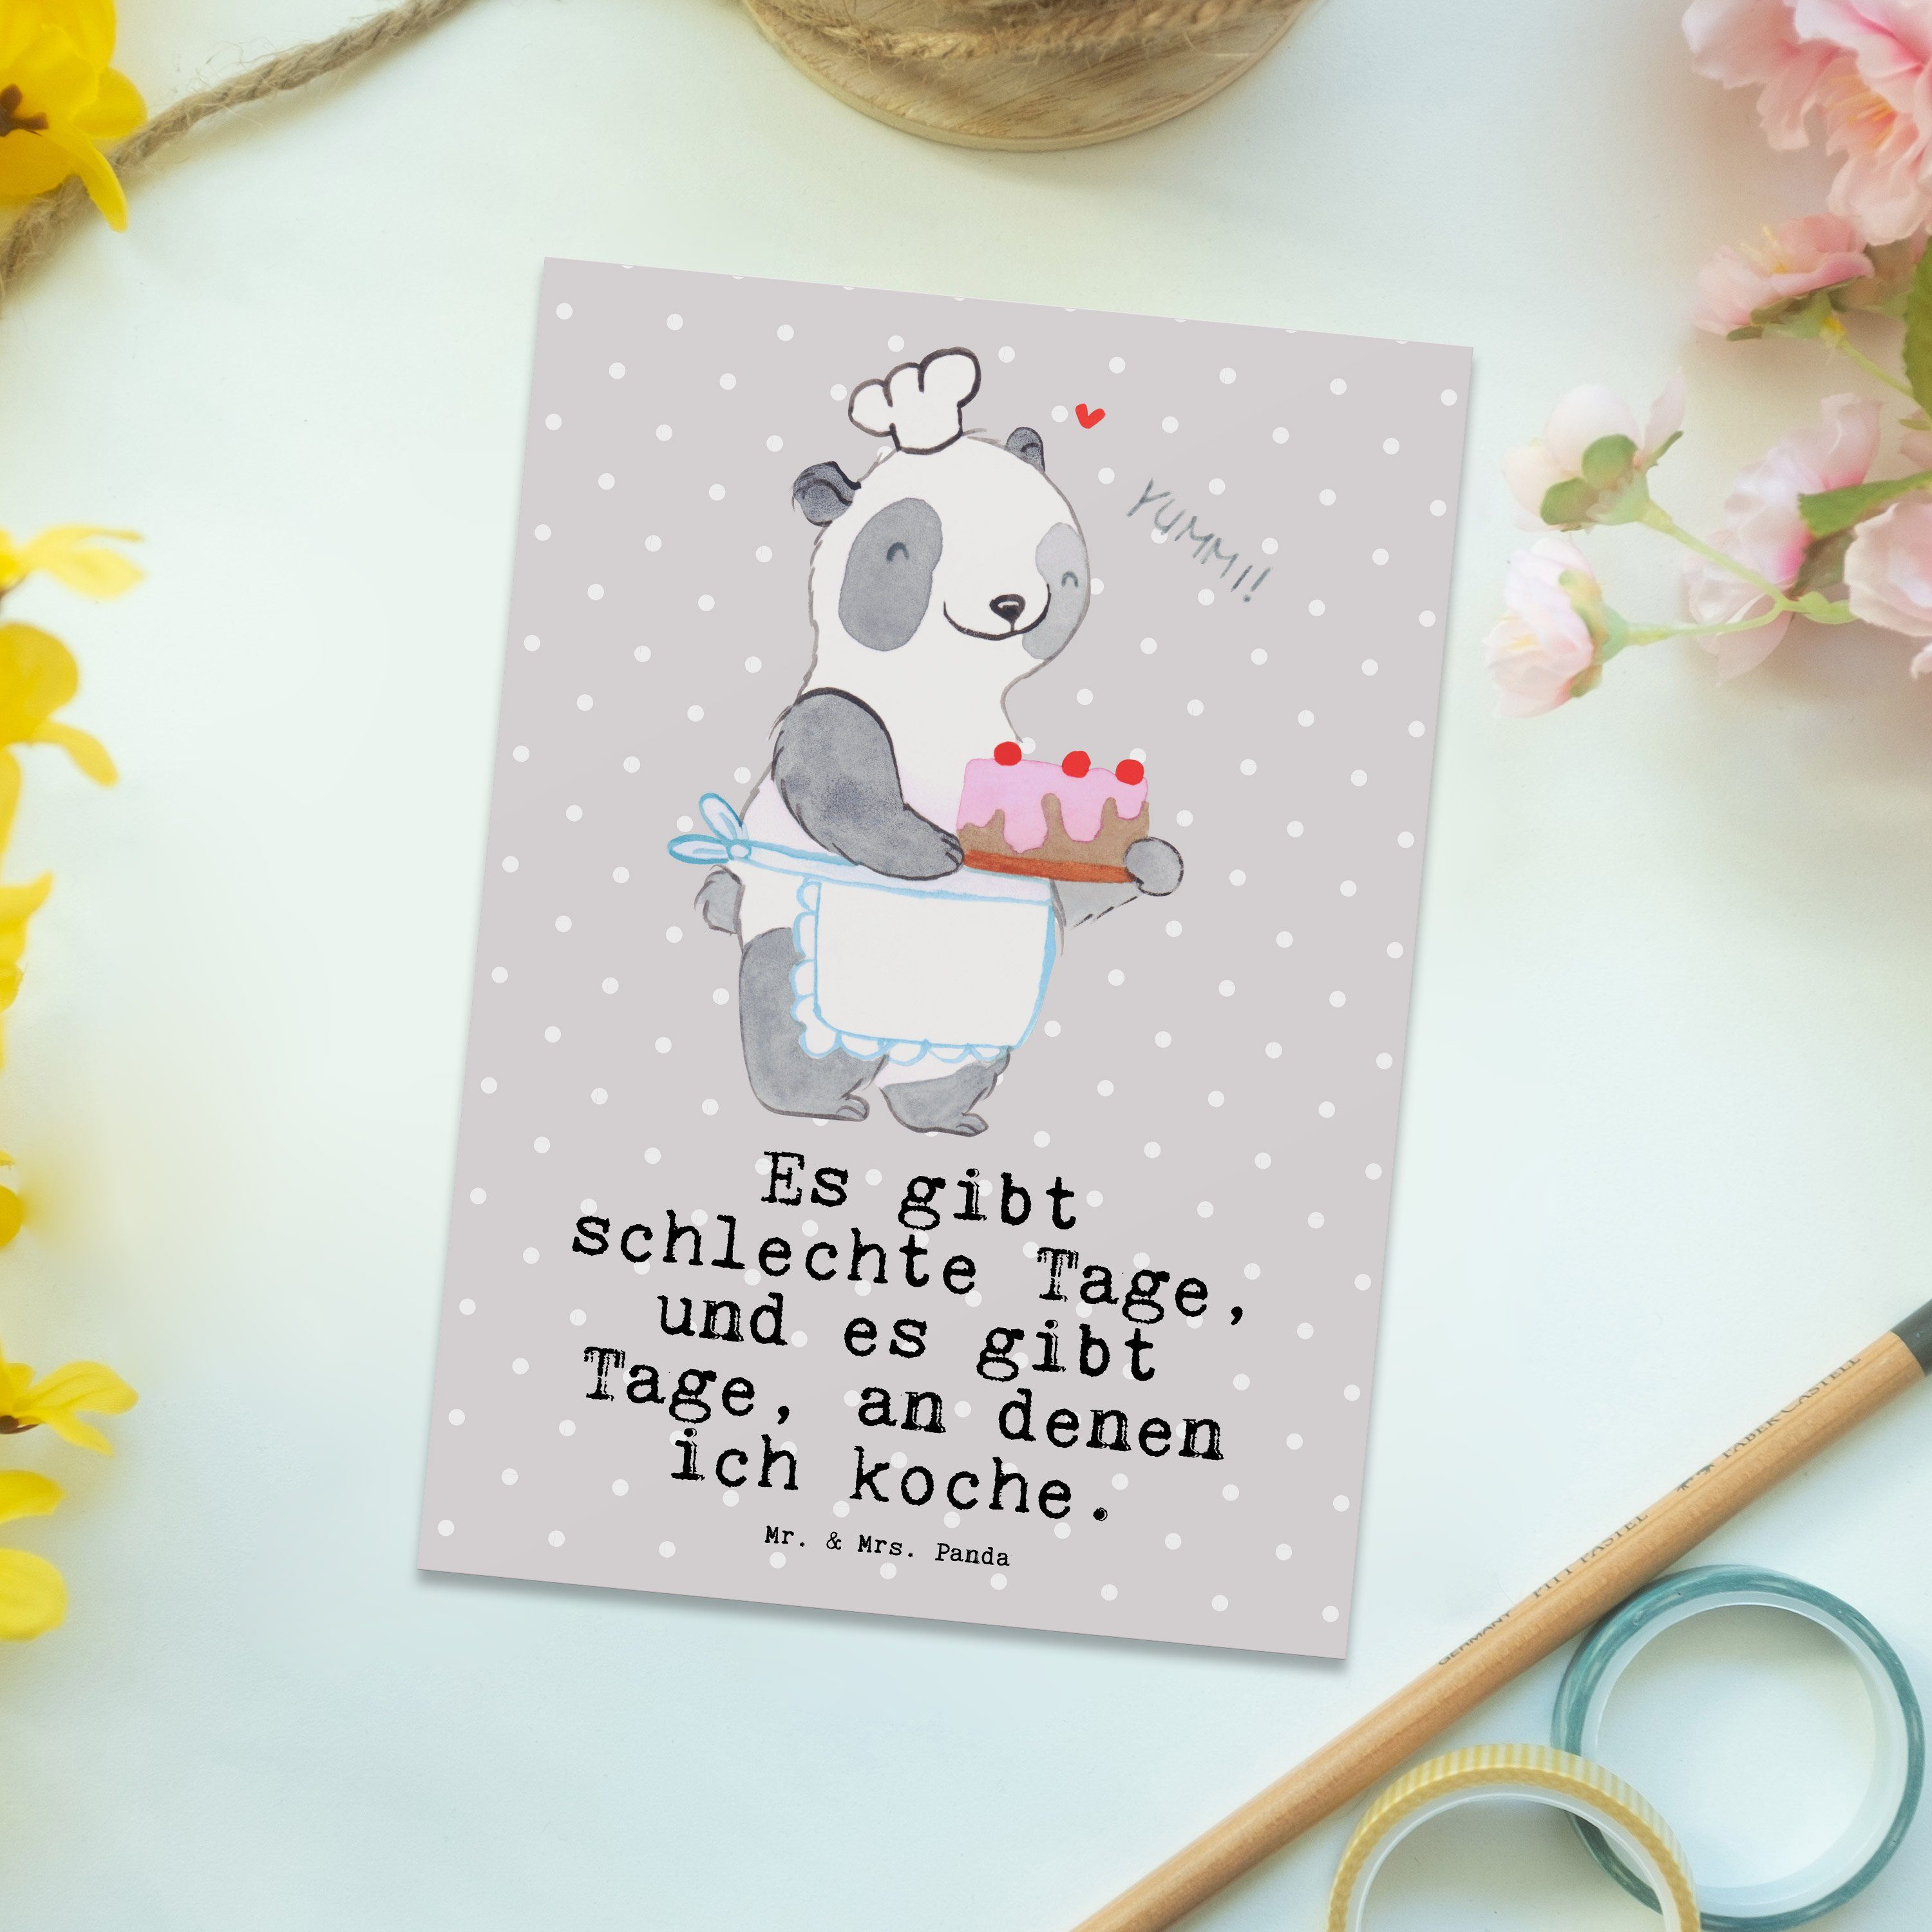 Mr. & Mrs. Panda Postkarte Bär Kochen Tage - Grau Pastell - Geschenk, Auszeichnung, Geschenkkart | Grußkarten